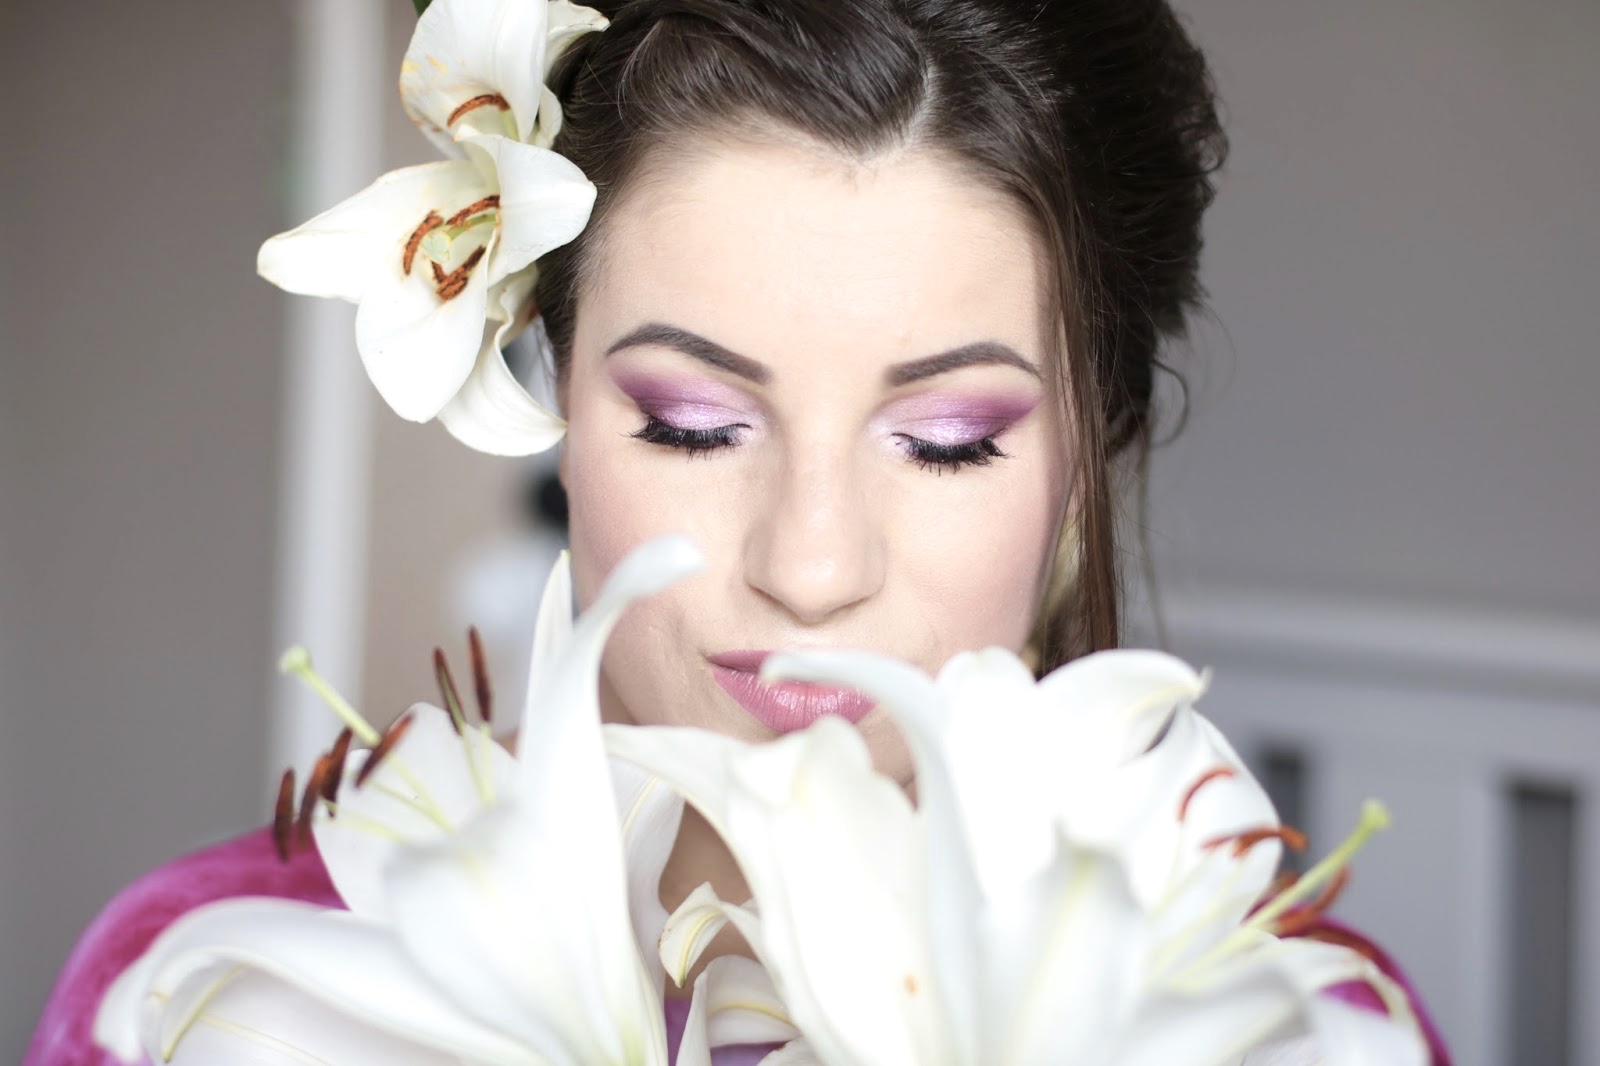 Bridal Makeup - RÃ³Å¼owy Ålubniaczek z BÅyskiem na oku | Ela Lis Make-Up